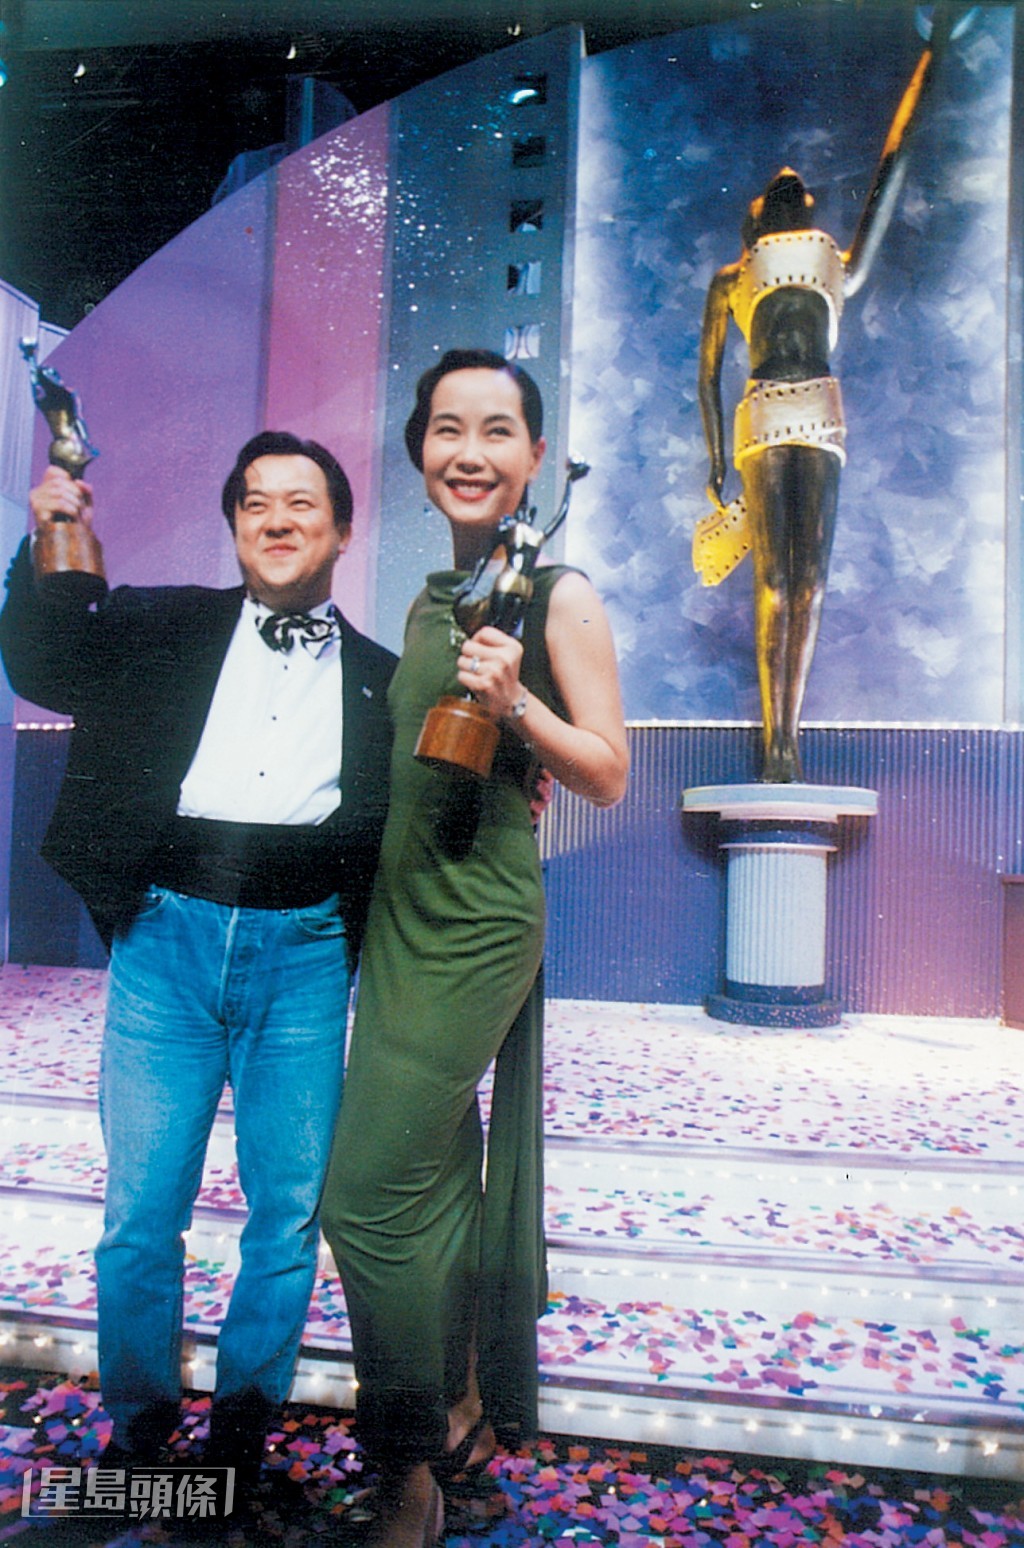 曾志偉早在1992年已憑電影《雙城故事》封金像影帝。